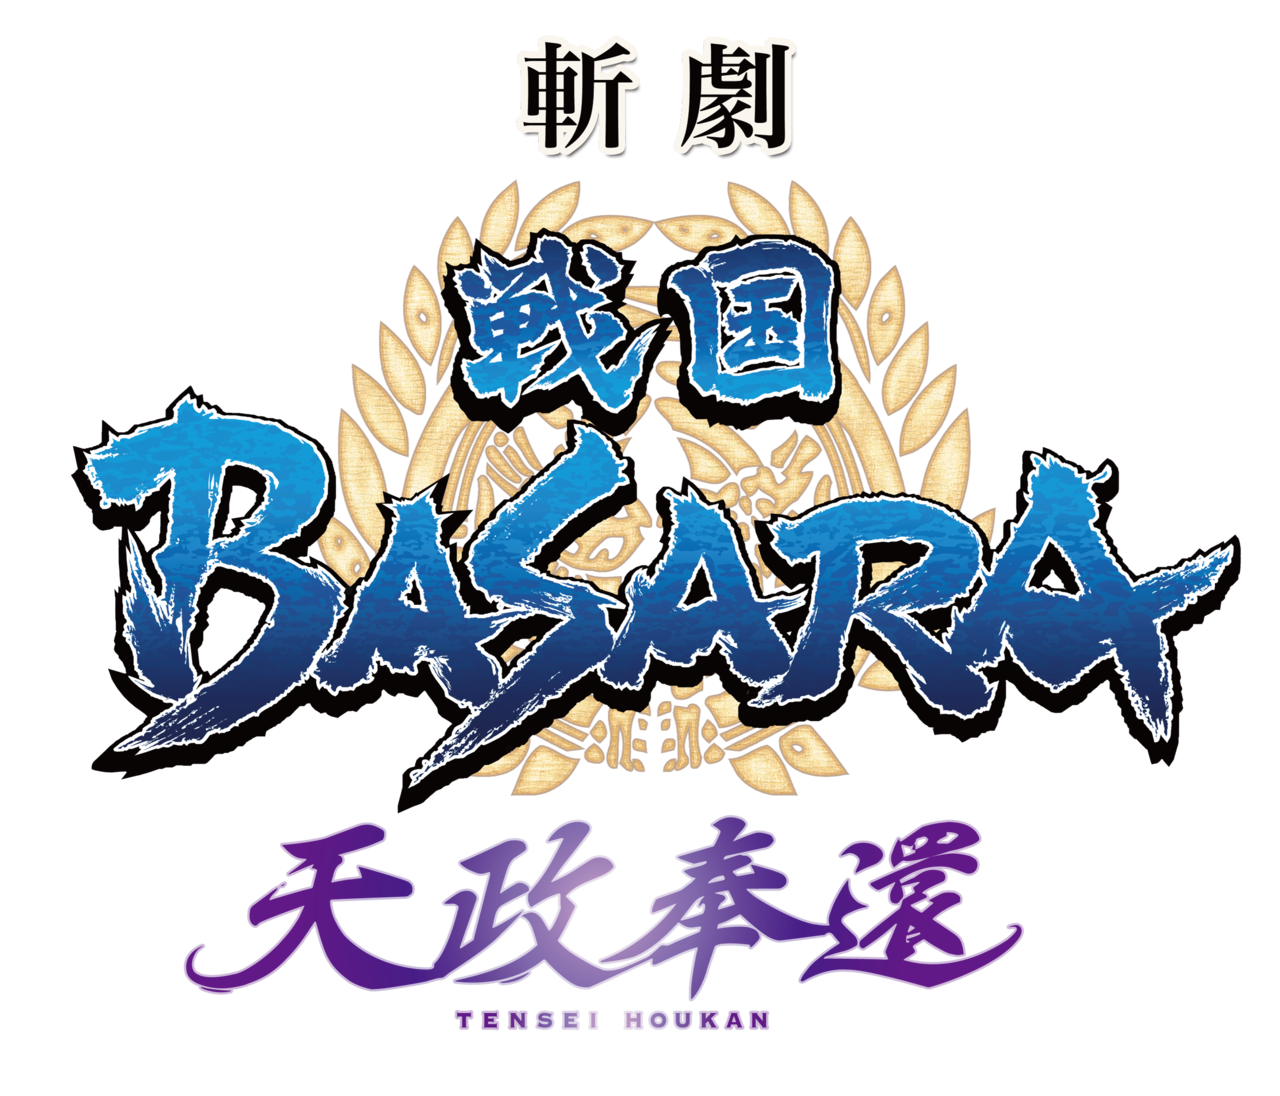 タイトル キャスト解禁 斬劇 戦国basara 最新作は2019年7月上演